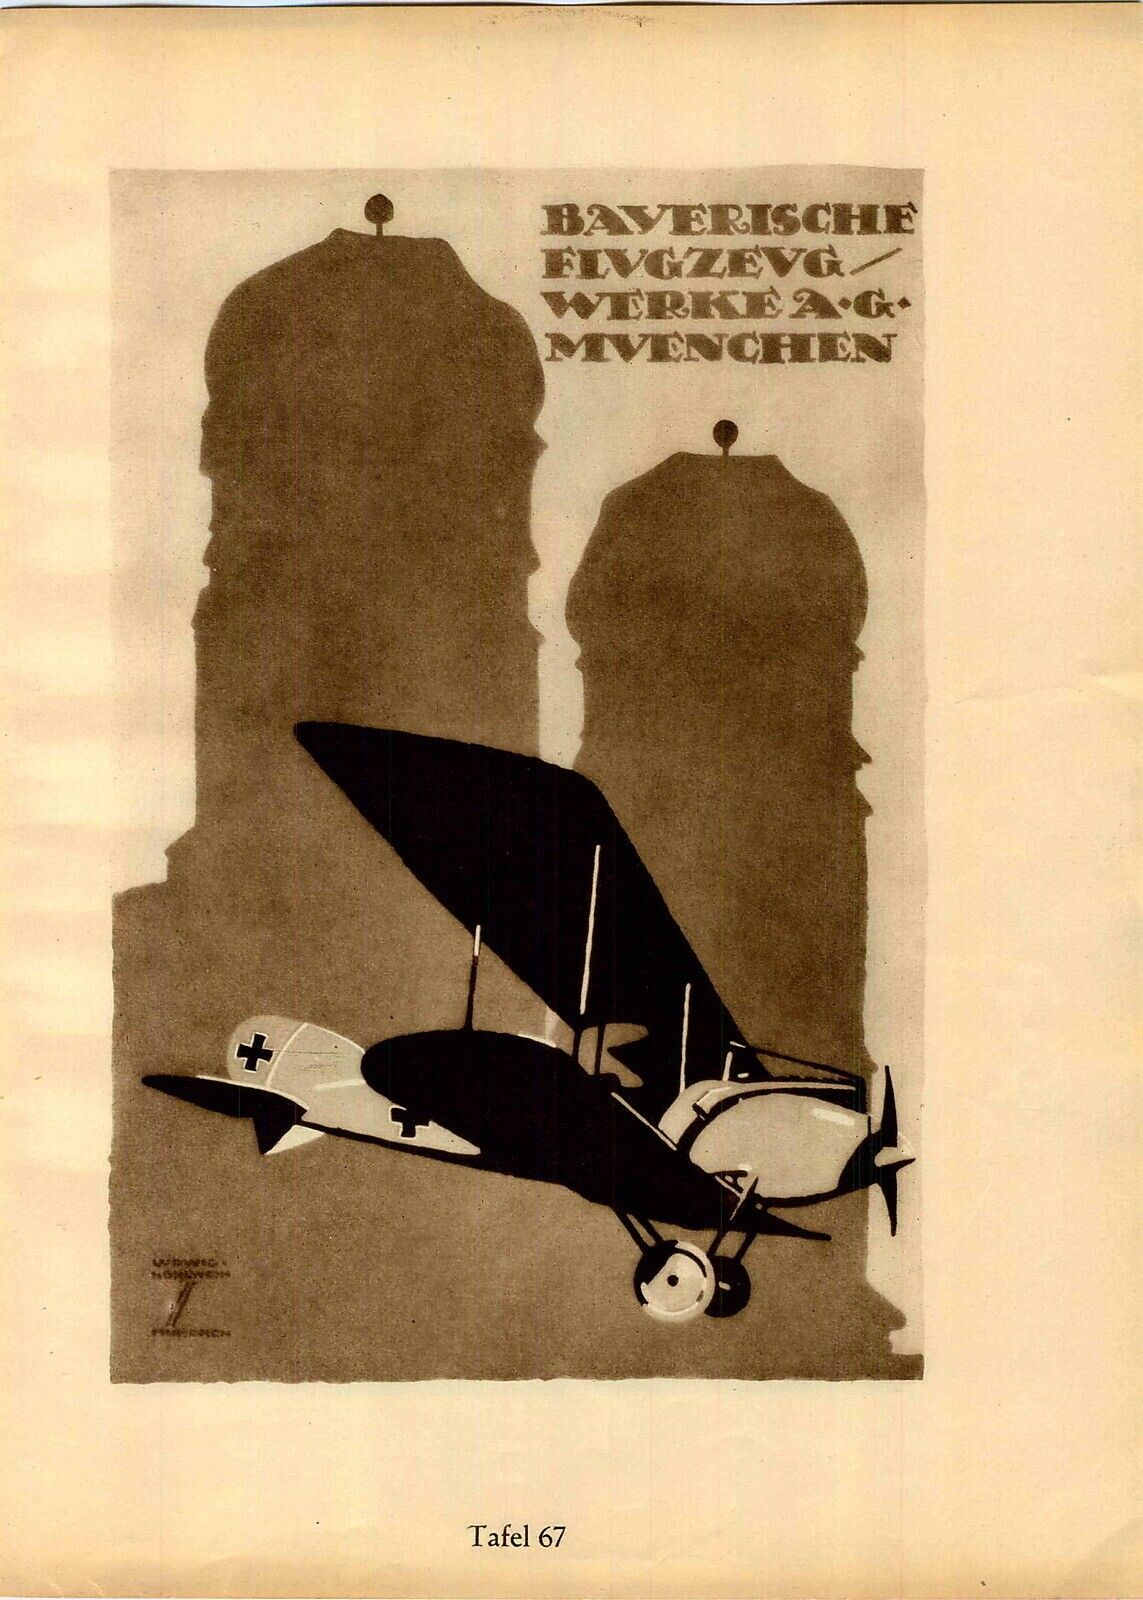 1926 Ludwig Hohlwein Poster Print Biplane Horse Rider Bayern Bayerische Flugzeug